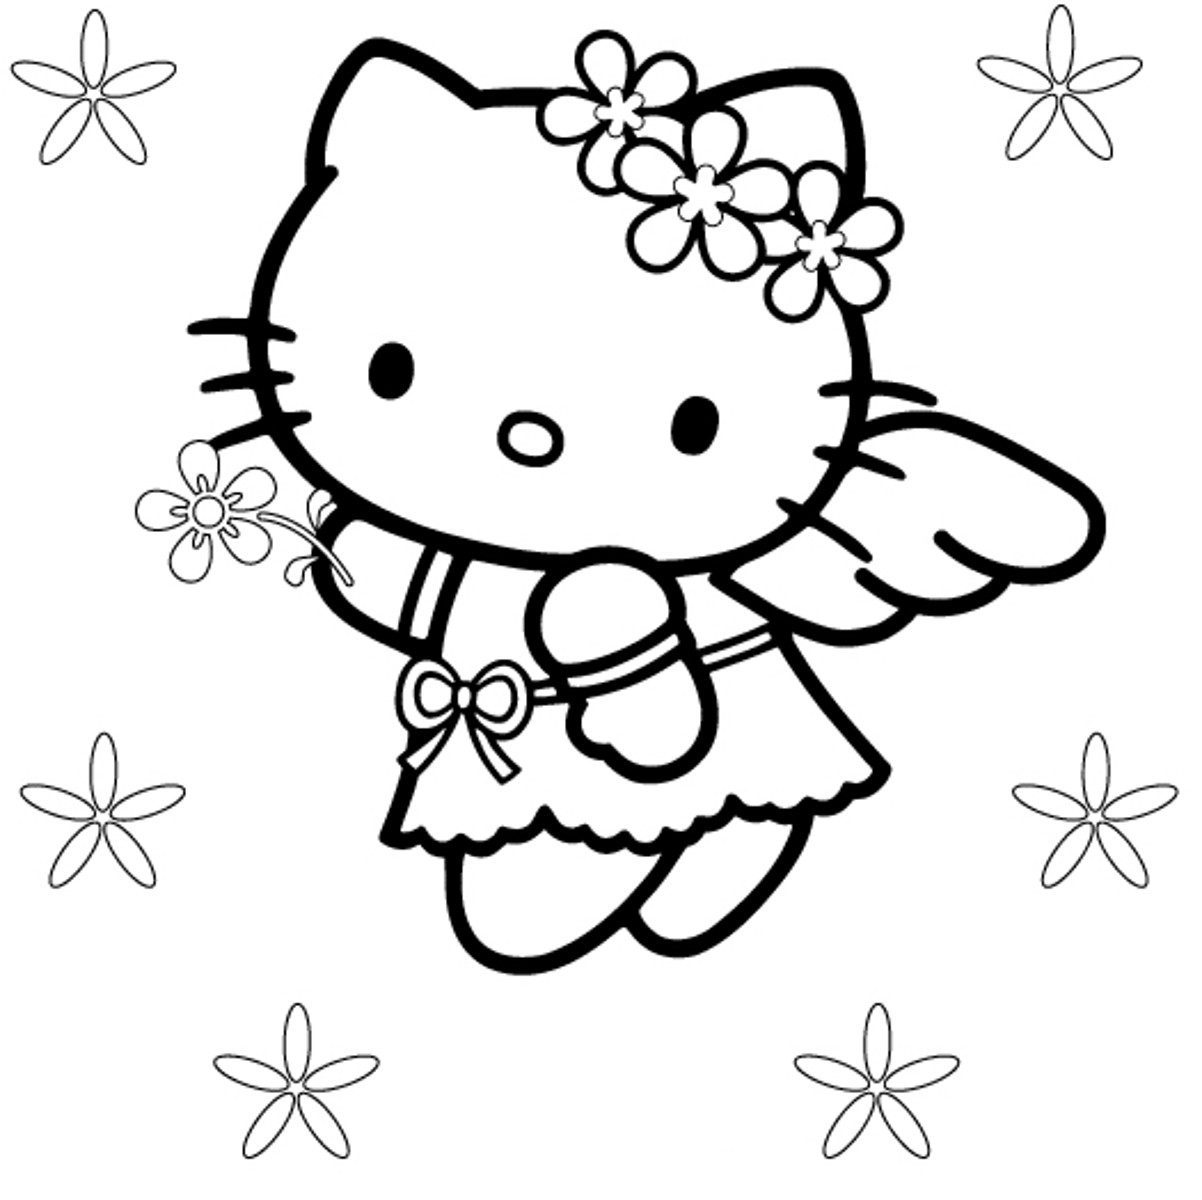 tron bo tranh to mau hello kitty dep de thuong nhat 30 - Trọn bộ tranh tô màu Hello Kitty đẹp, dễ thương nhất